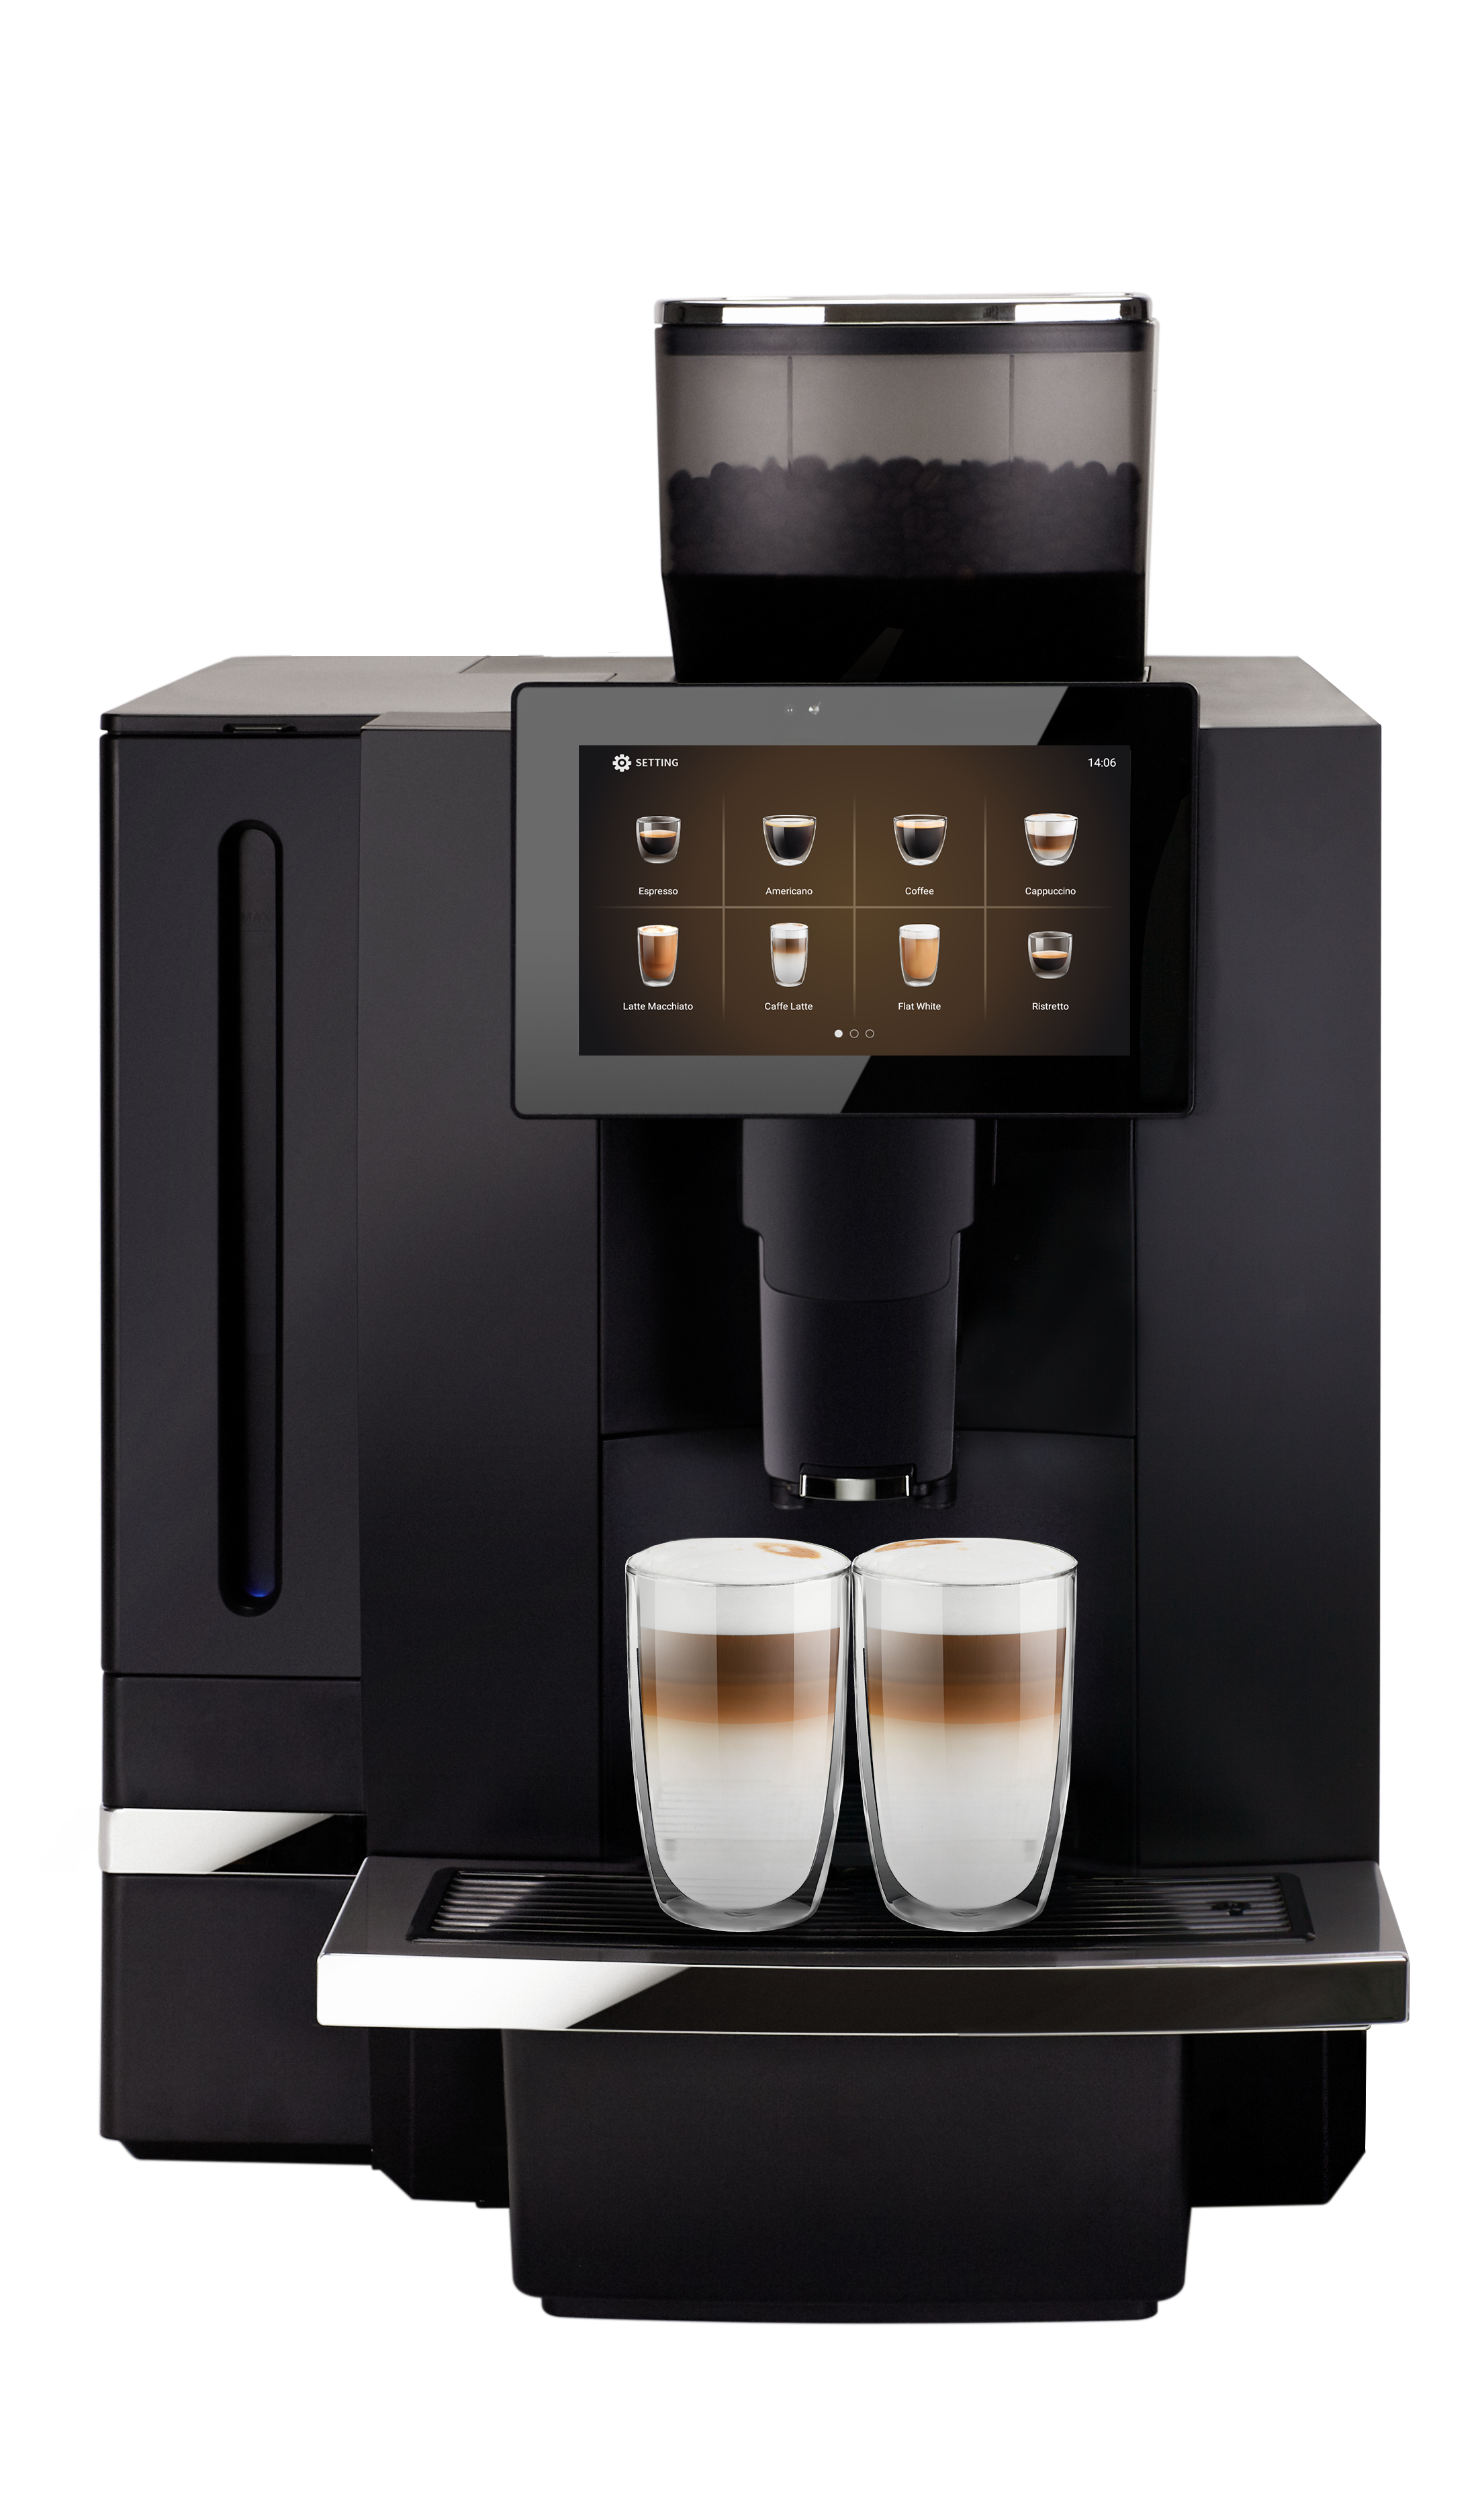 Coffee machine for rent - Vinbarista